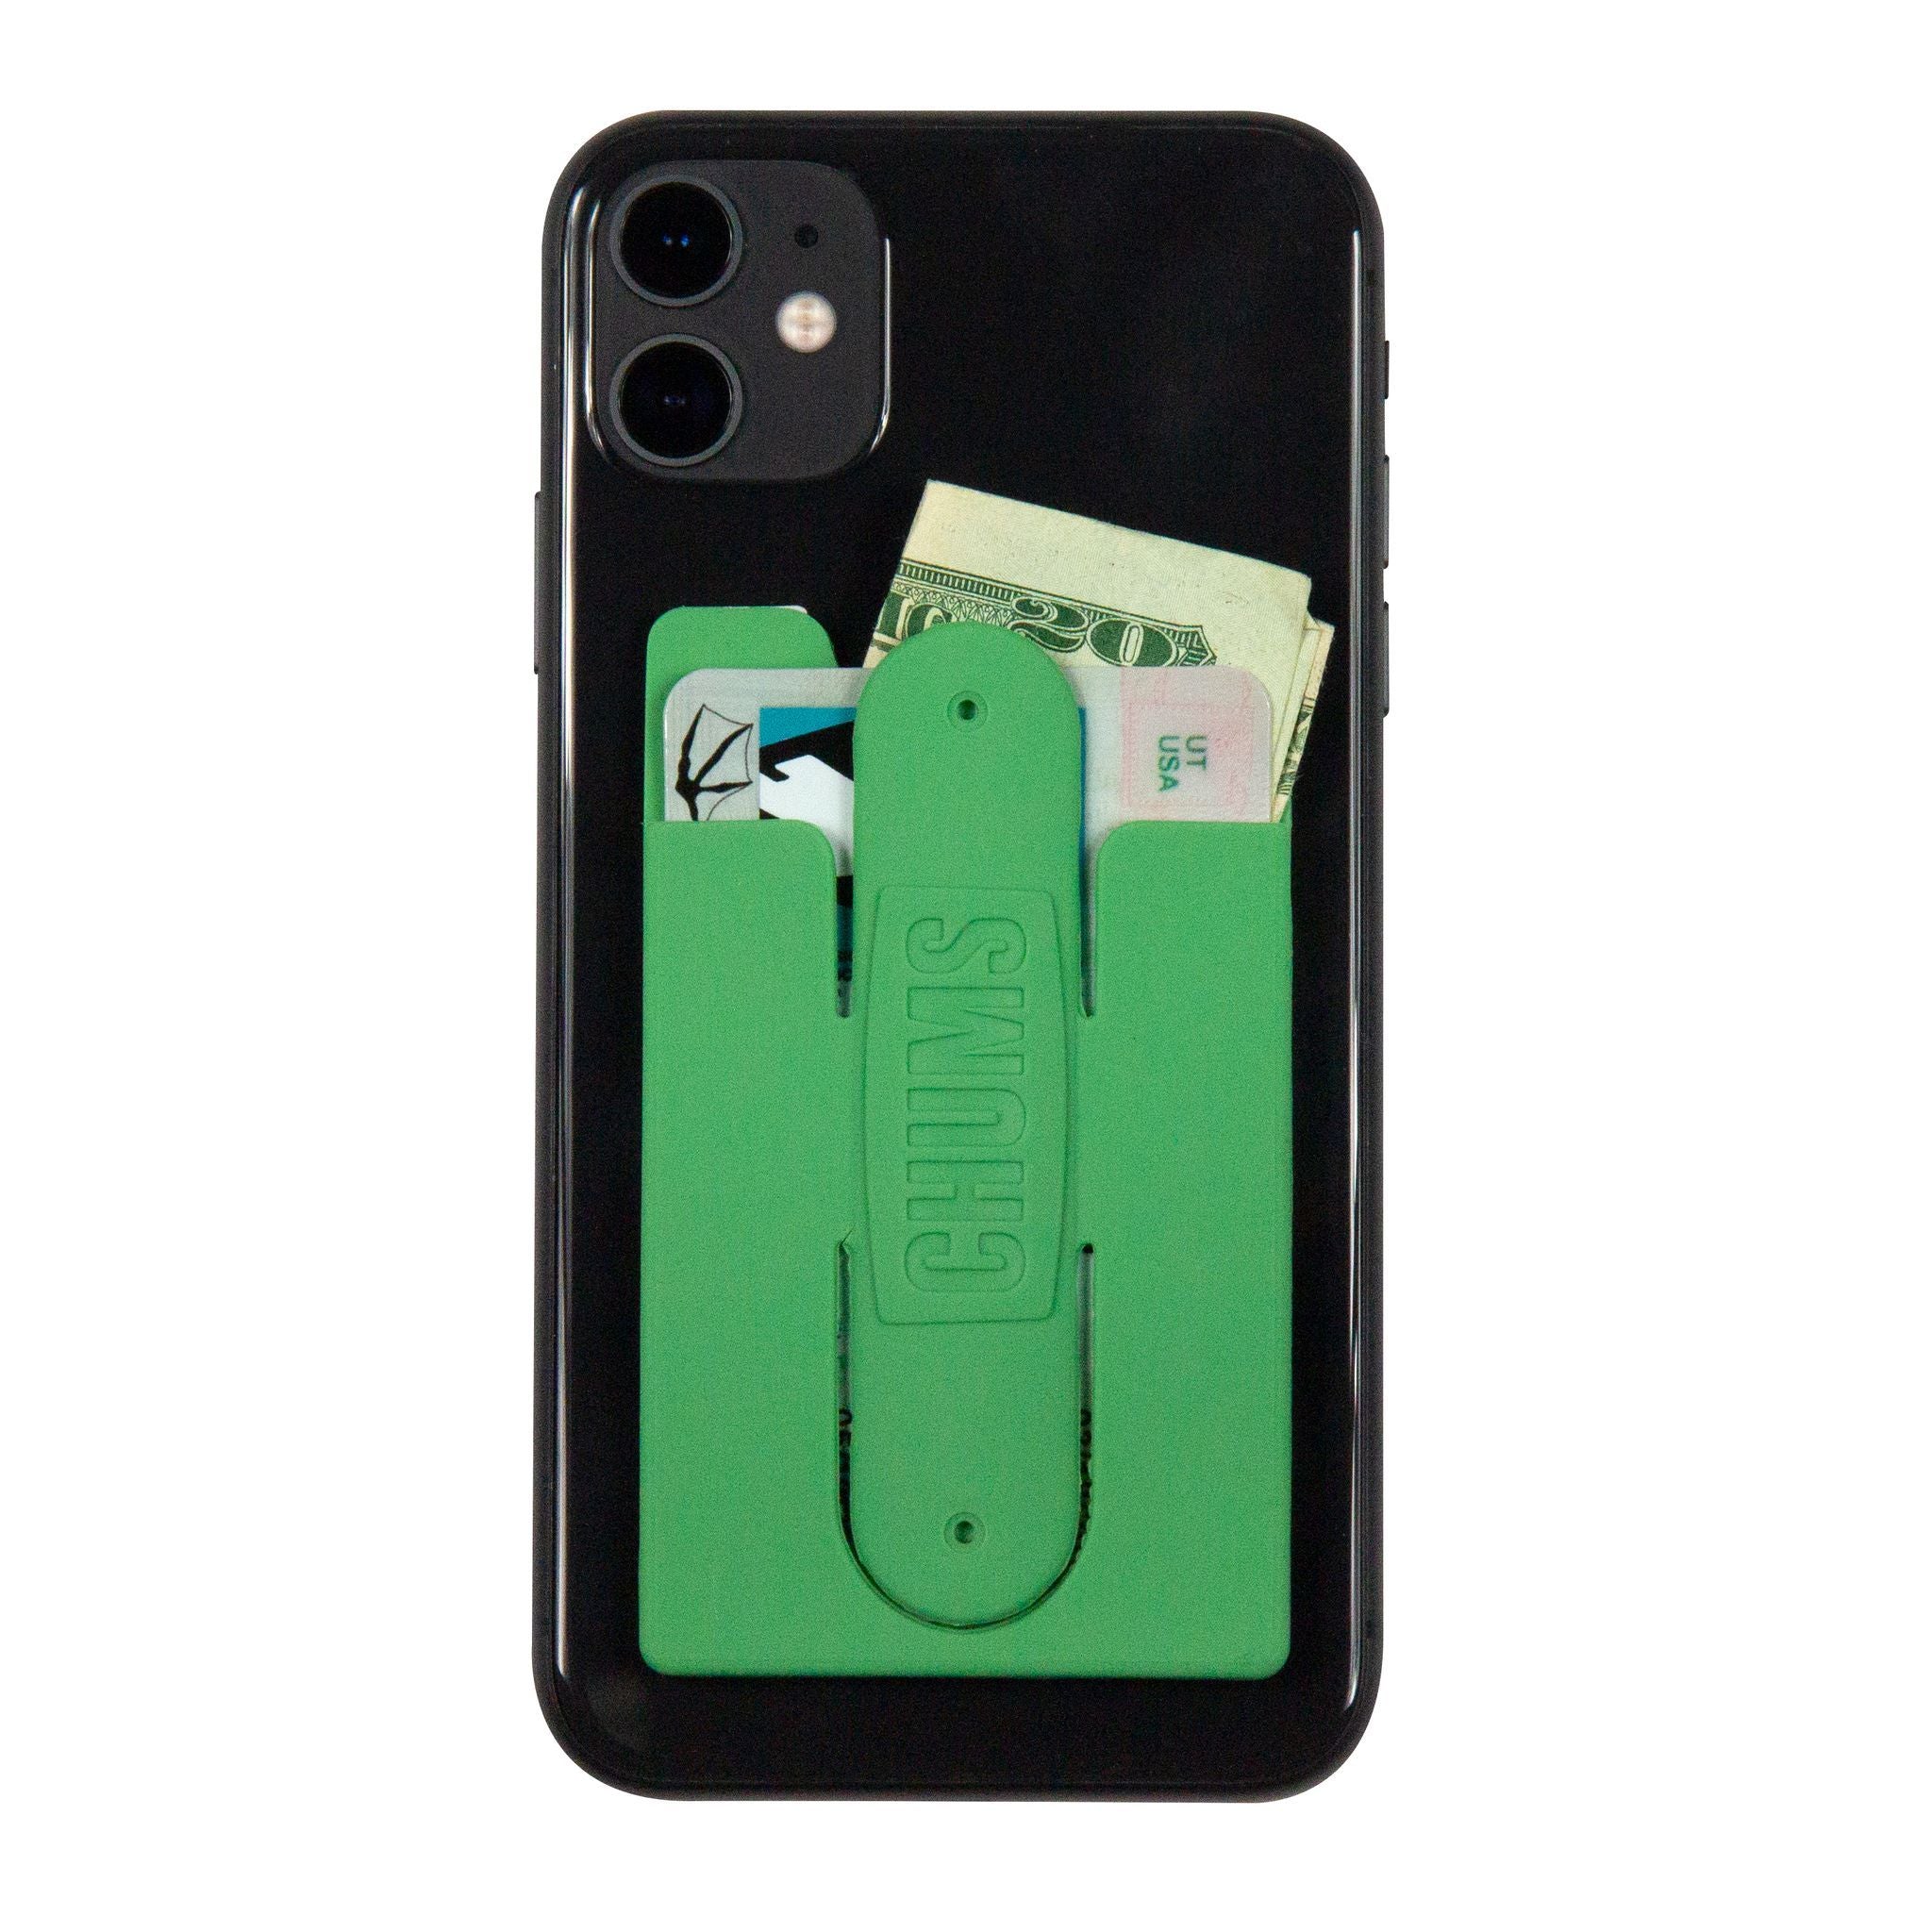 #18575786 back of phone wallet flipper meadow green